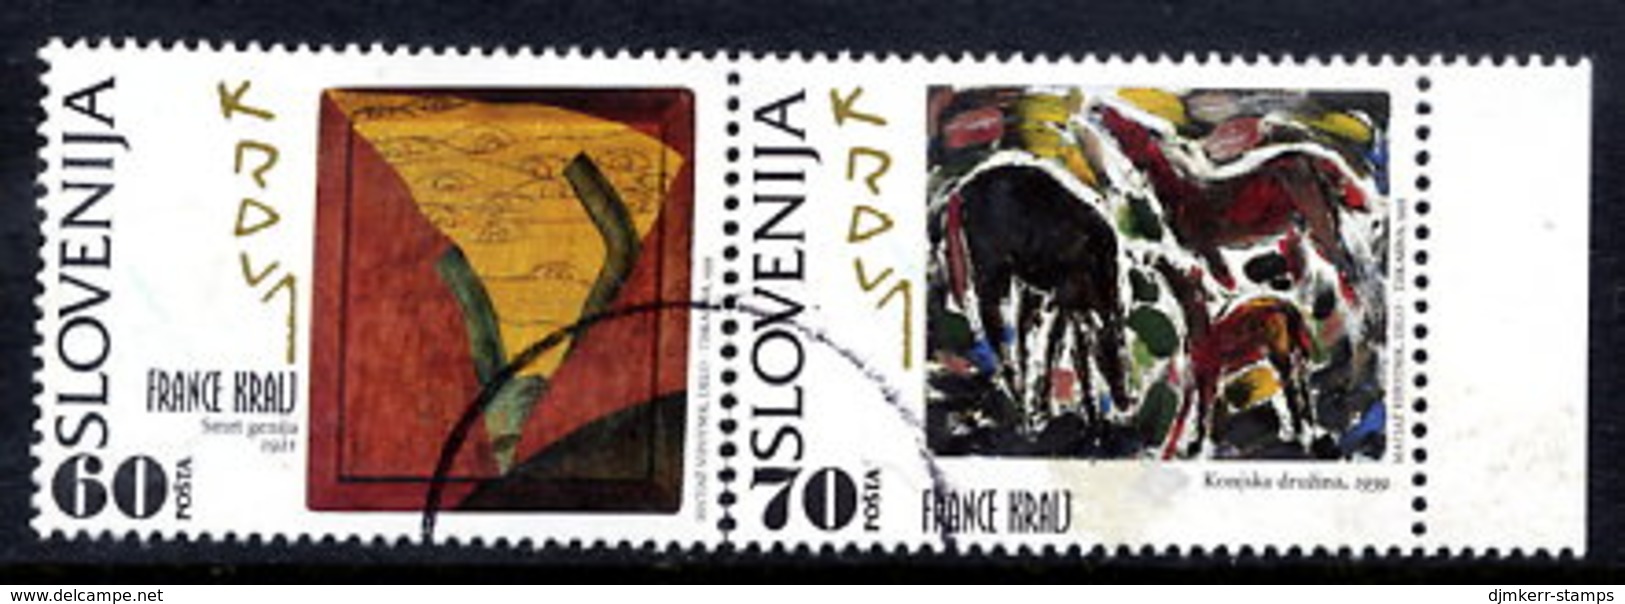 SLOVENIA 1995 France Kralj Centenary Pair.used.  Michel 121-22 - Slovénie